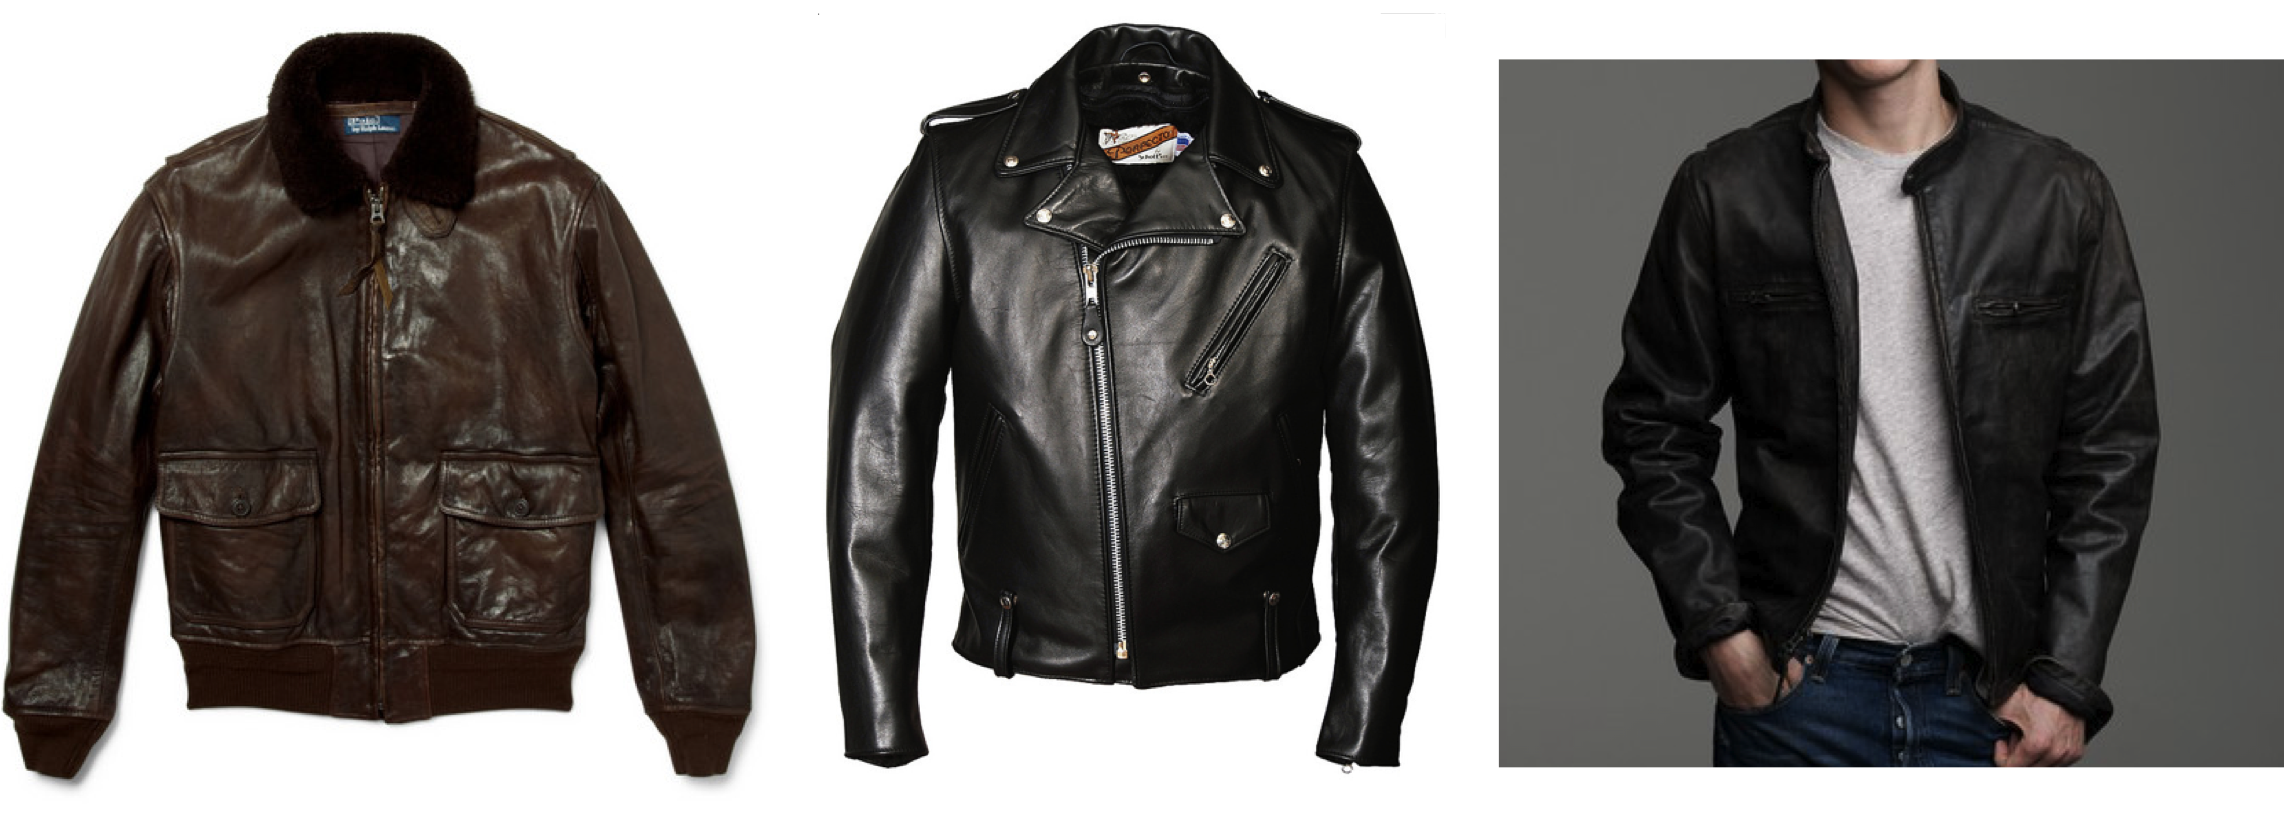 Boys Leather Jacket - Black Leather Jacket